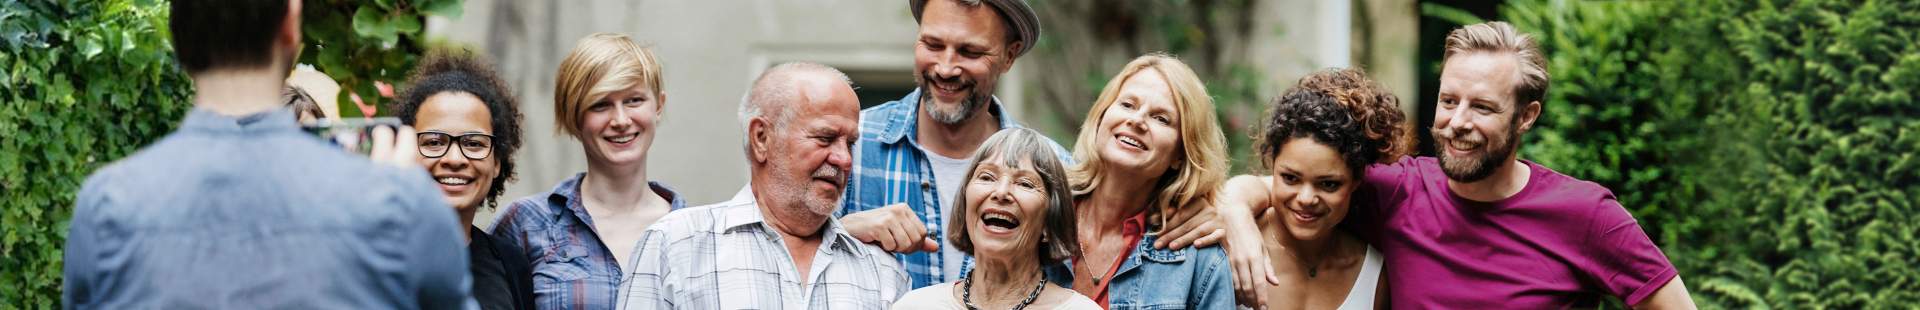 VRK Pflegeversicherung – Eine glückliche Familie mit mehreren Generationen lässt sich fotografieren.